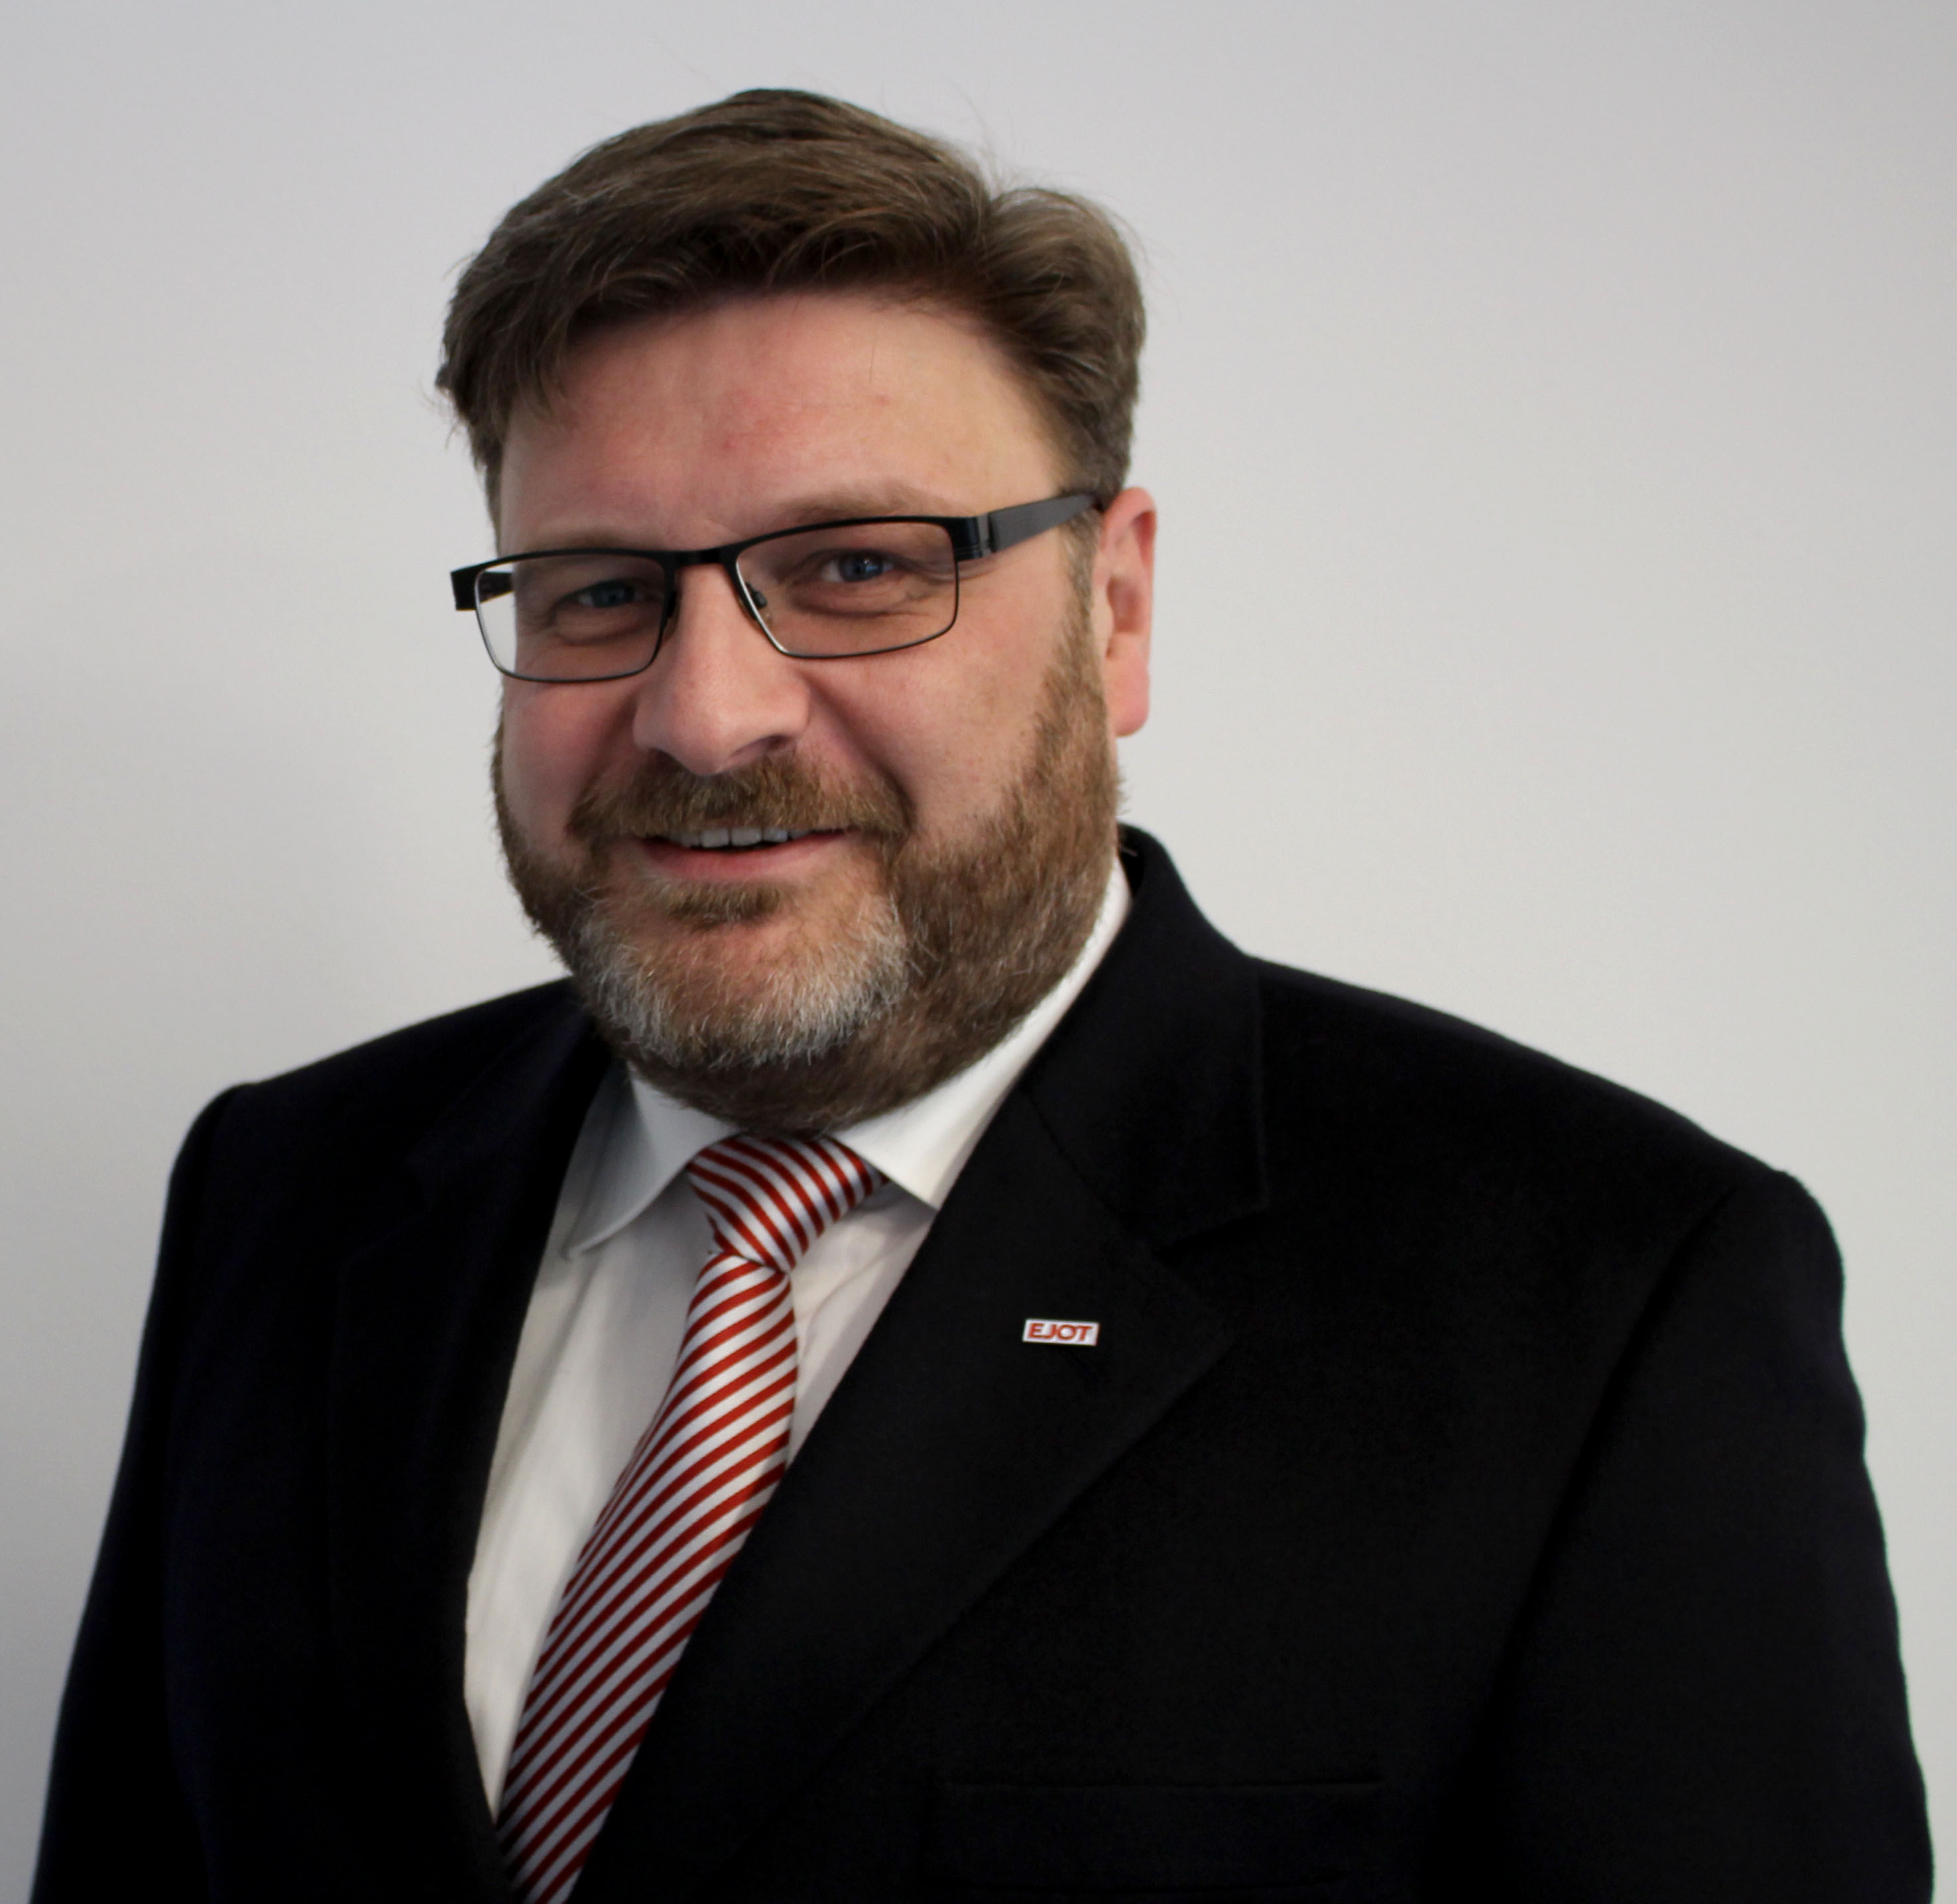 Der 43-jährige Thorsten Michael Lauber ist neuer Geschäftsführer der EJOT ...